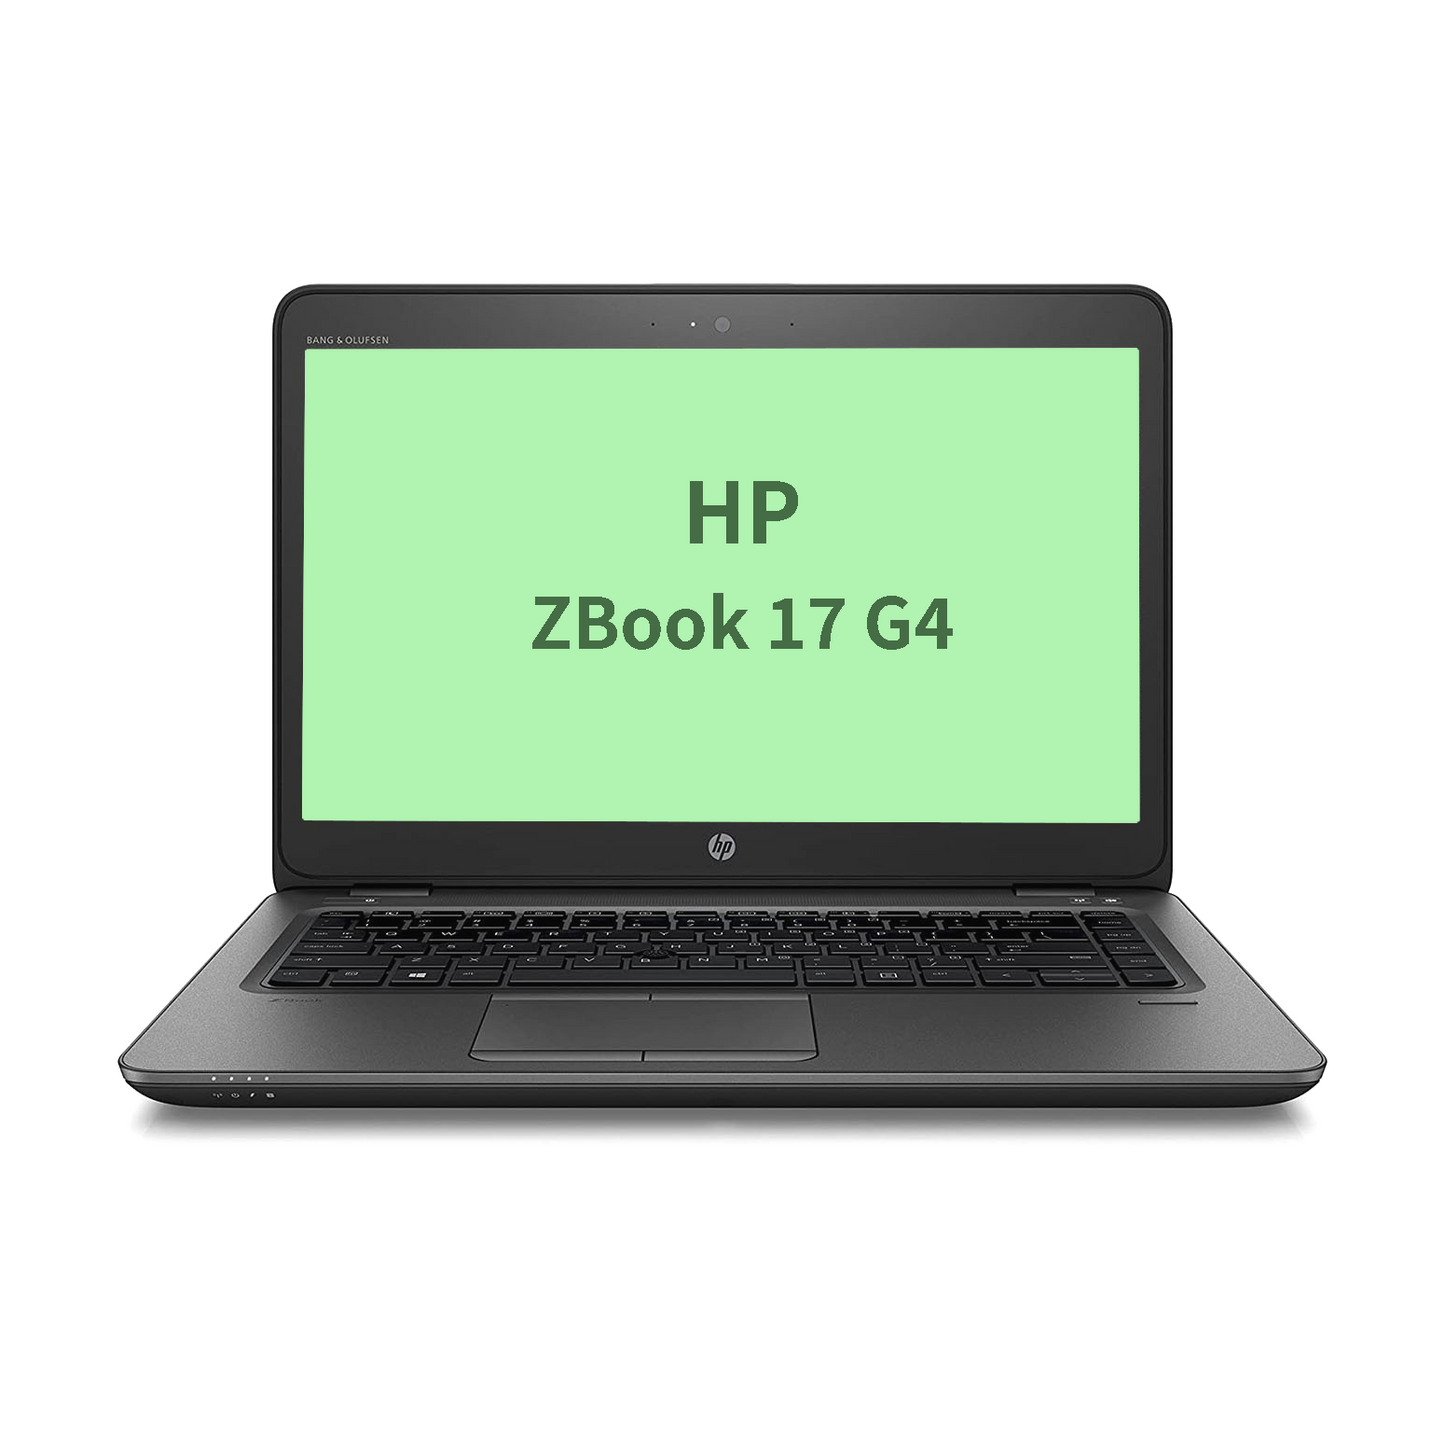 HP Zbook 17